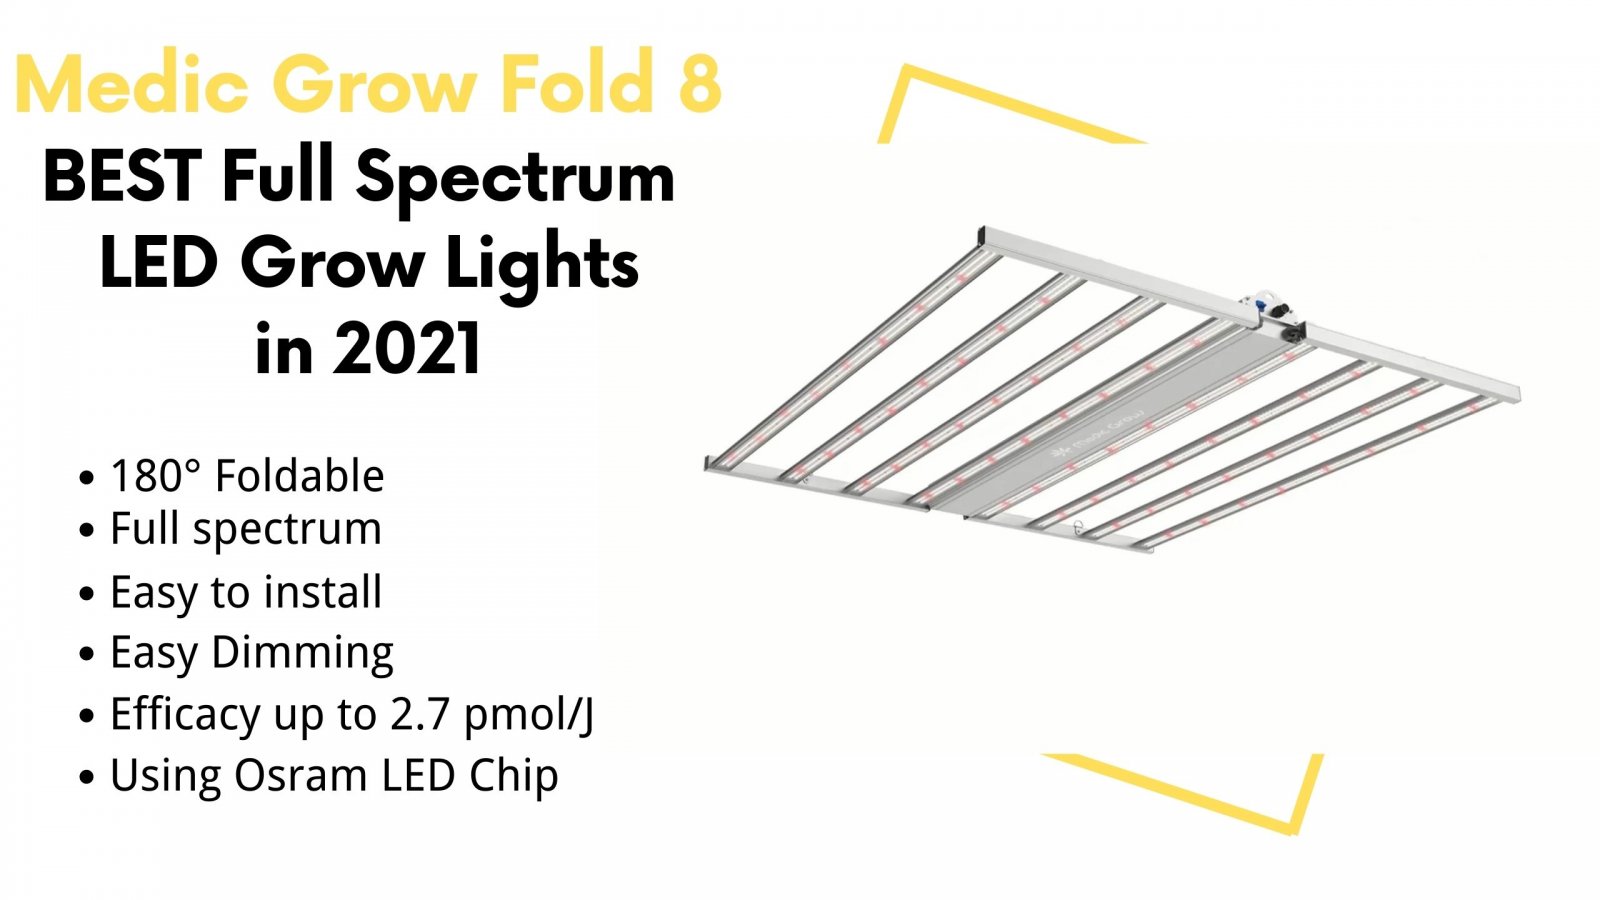 medic-grow-fold-8 -best-full-spectrum-led-grow-lights-in-2021.jpg